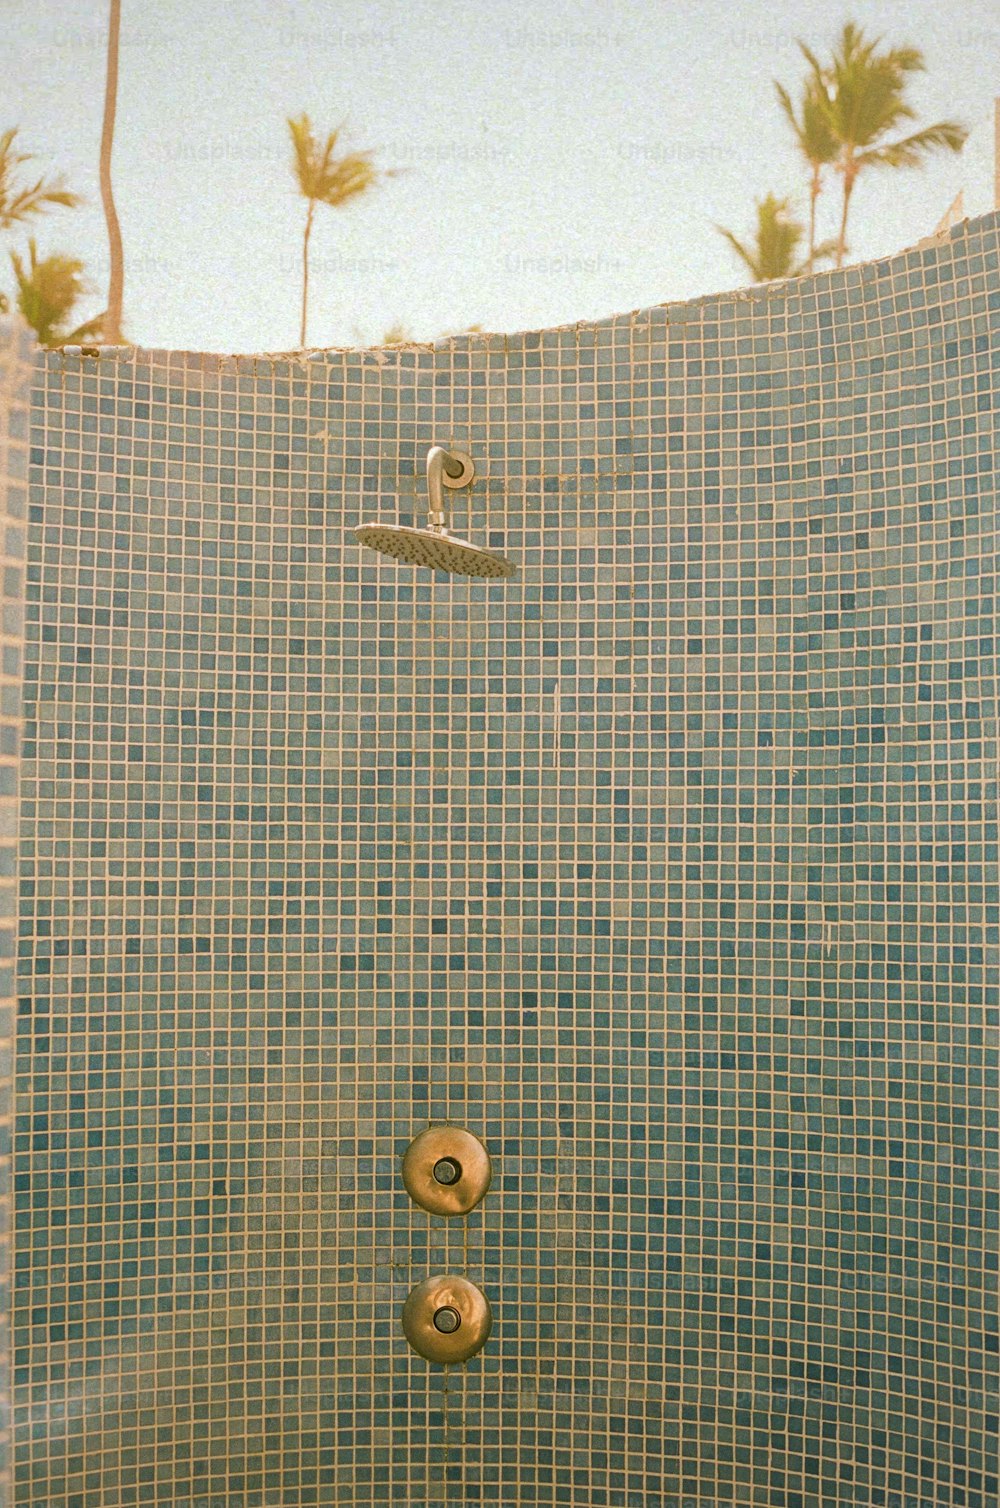 샤워 헤드와 휴대용 샤워 수도꼭지가 있는 타일 샤워실